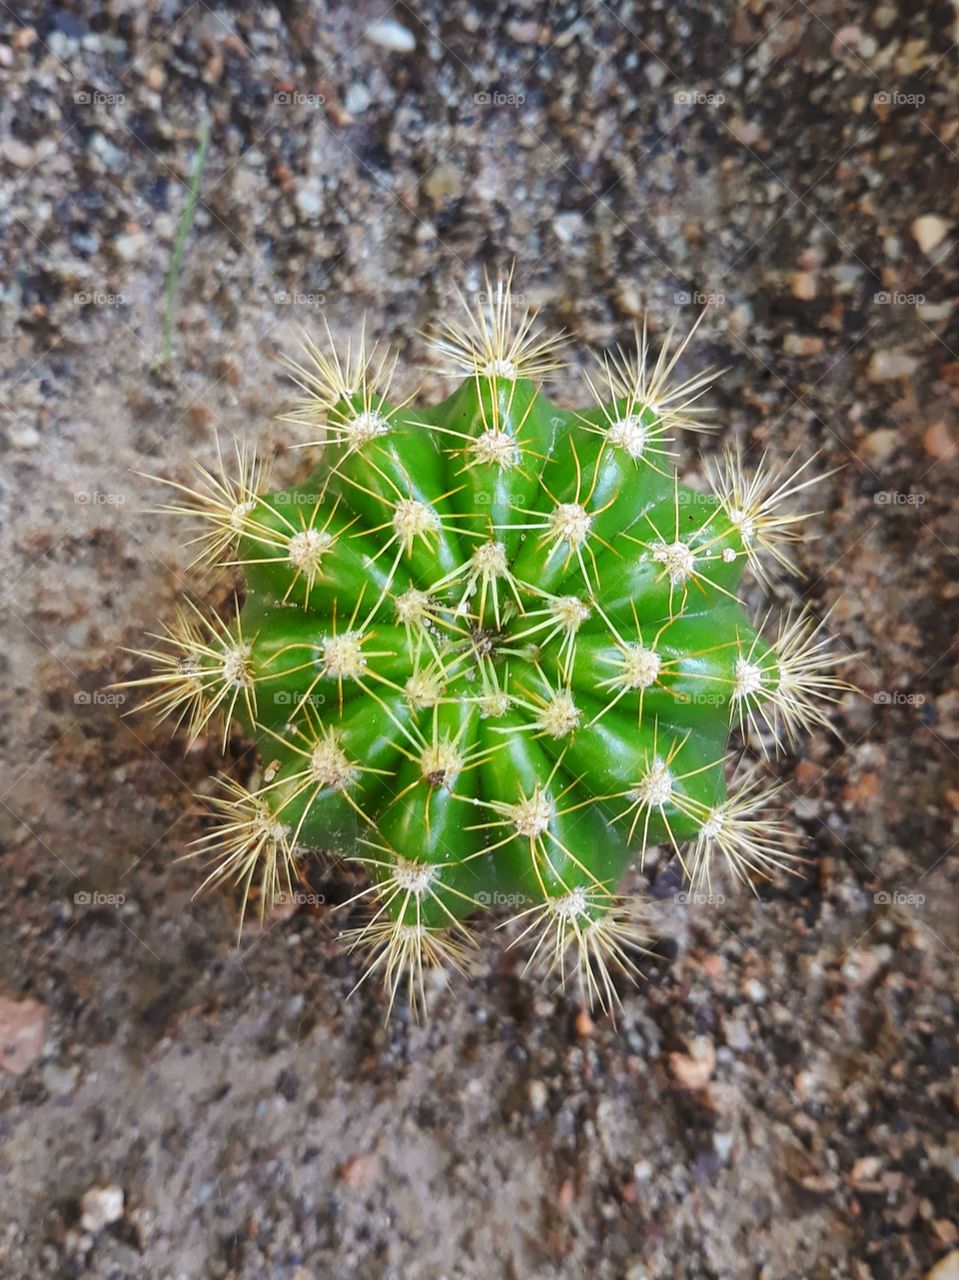 Cactus in a Brazilian Garden